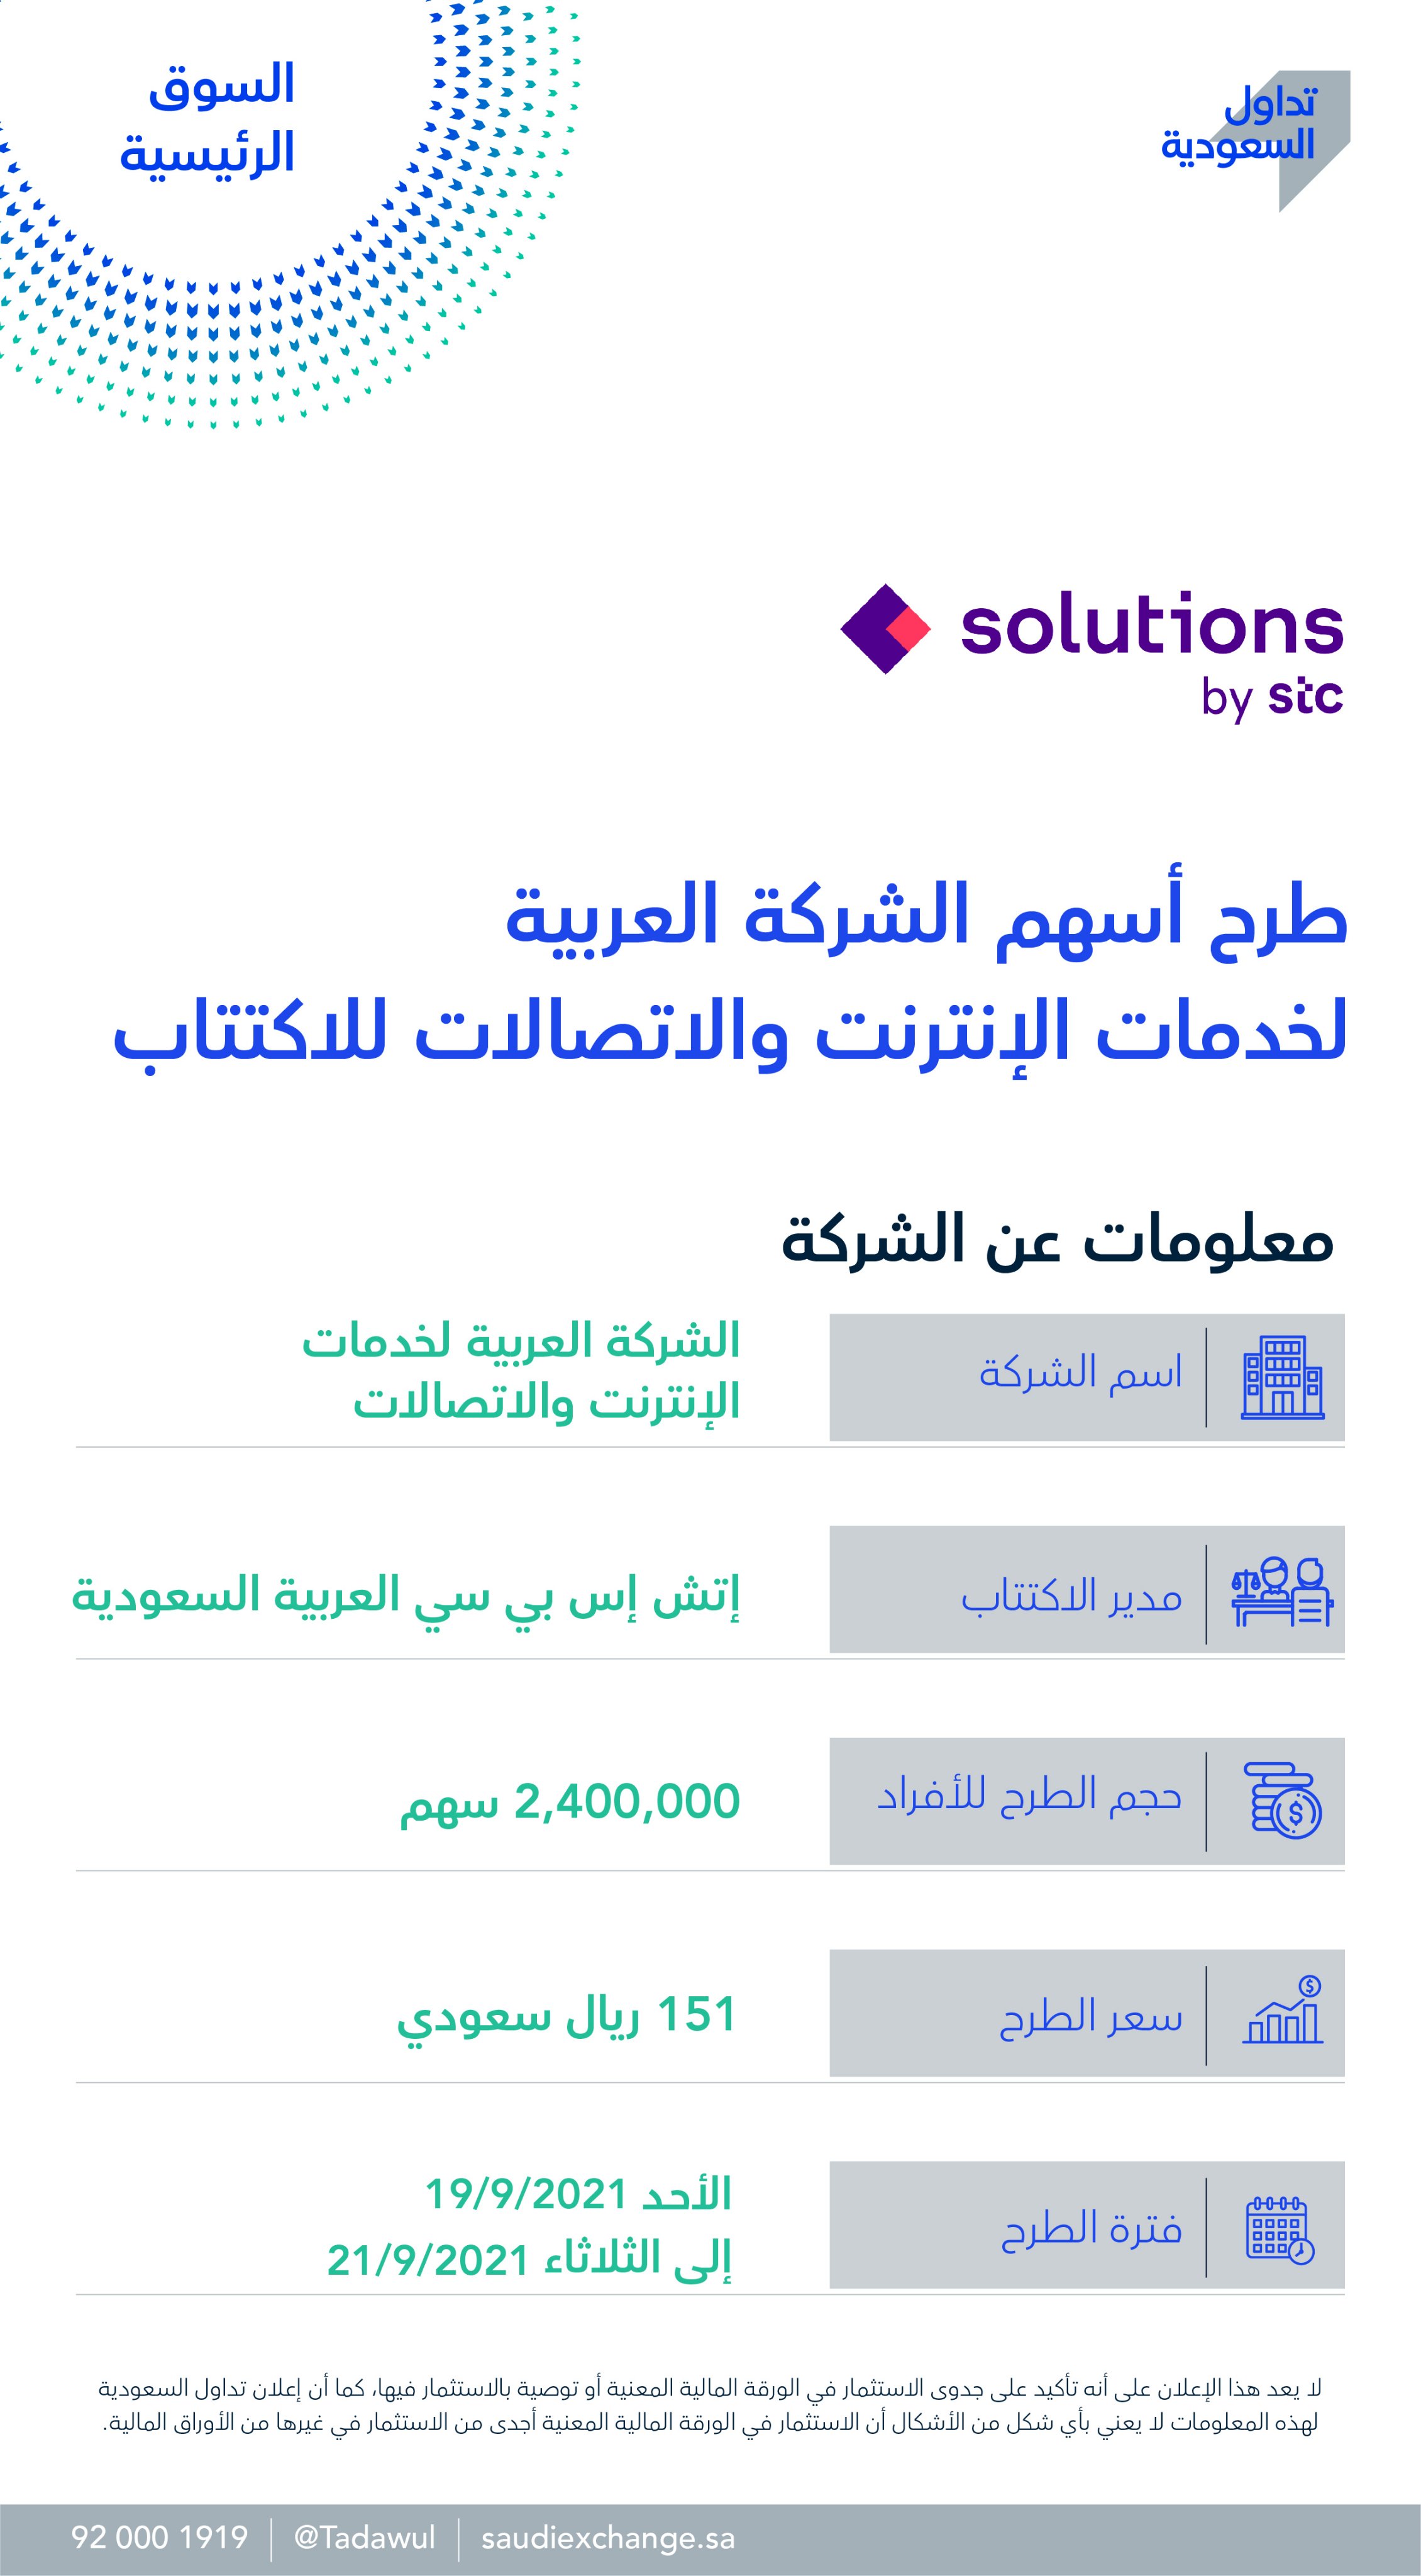 سهم الشركة العربية لخدمات الإنترنت والاتصالات